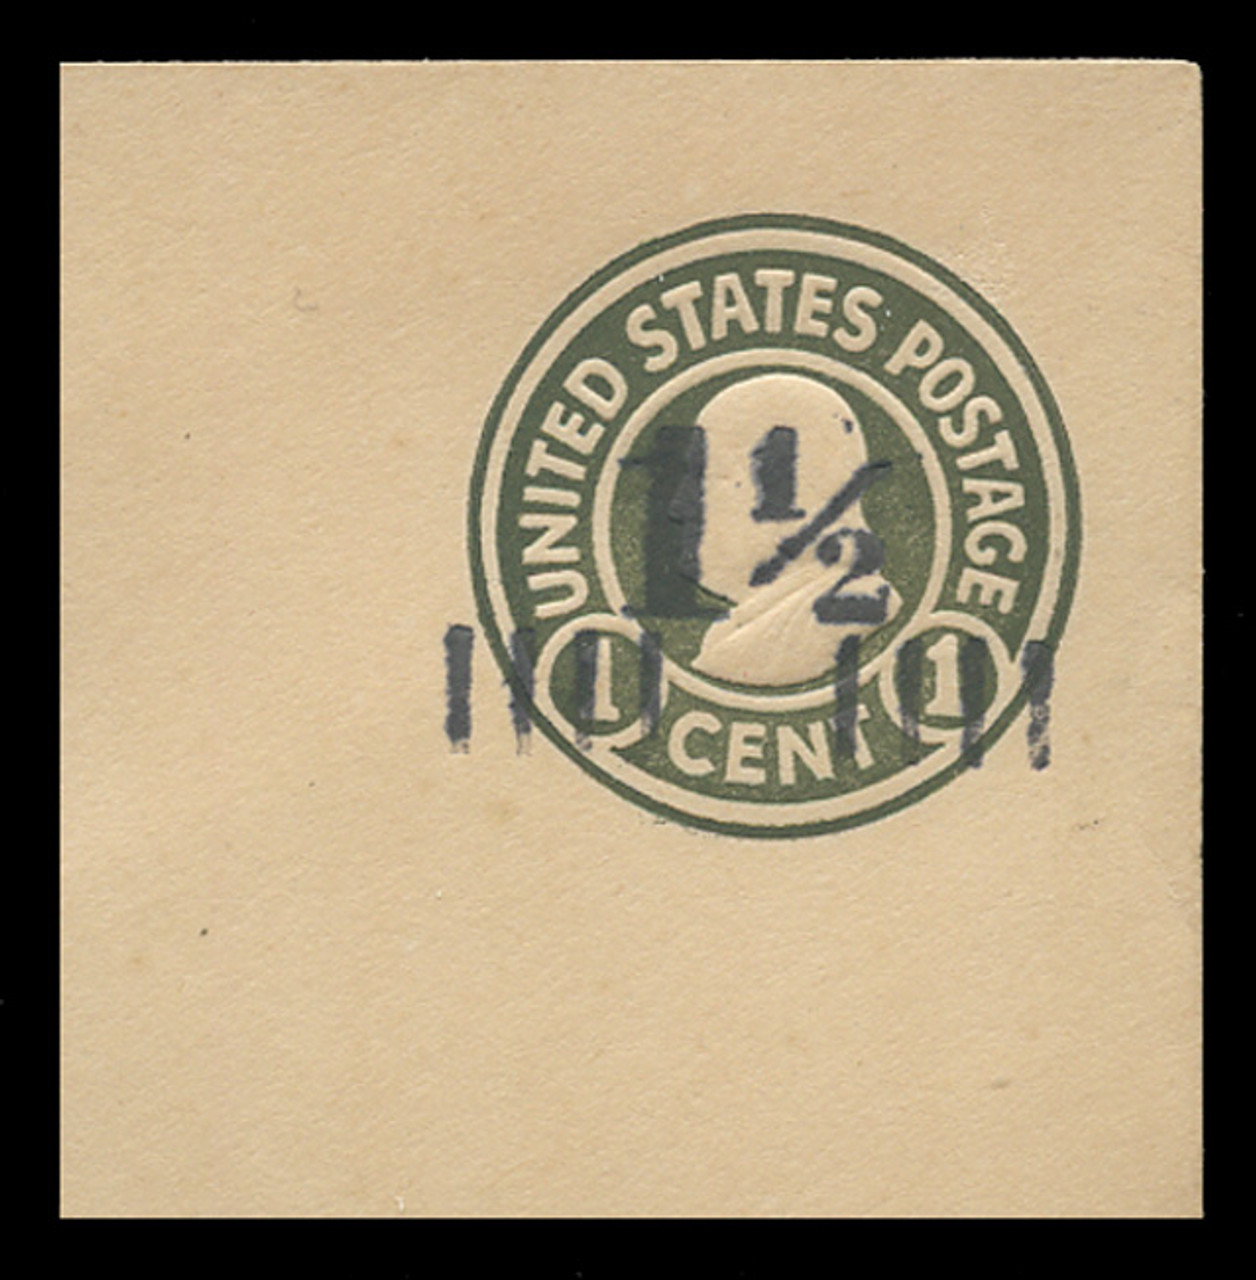 U.S. Scott # U 495, 1925 1½c on 1c (U420) Franklin, green on white, Die 1 - Mint Full Corner